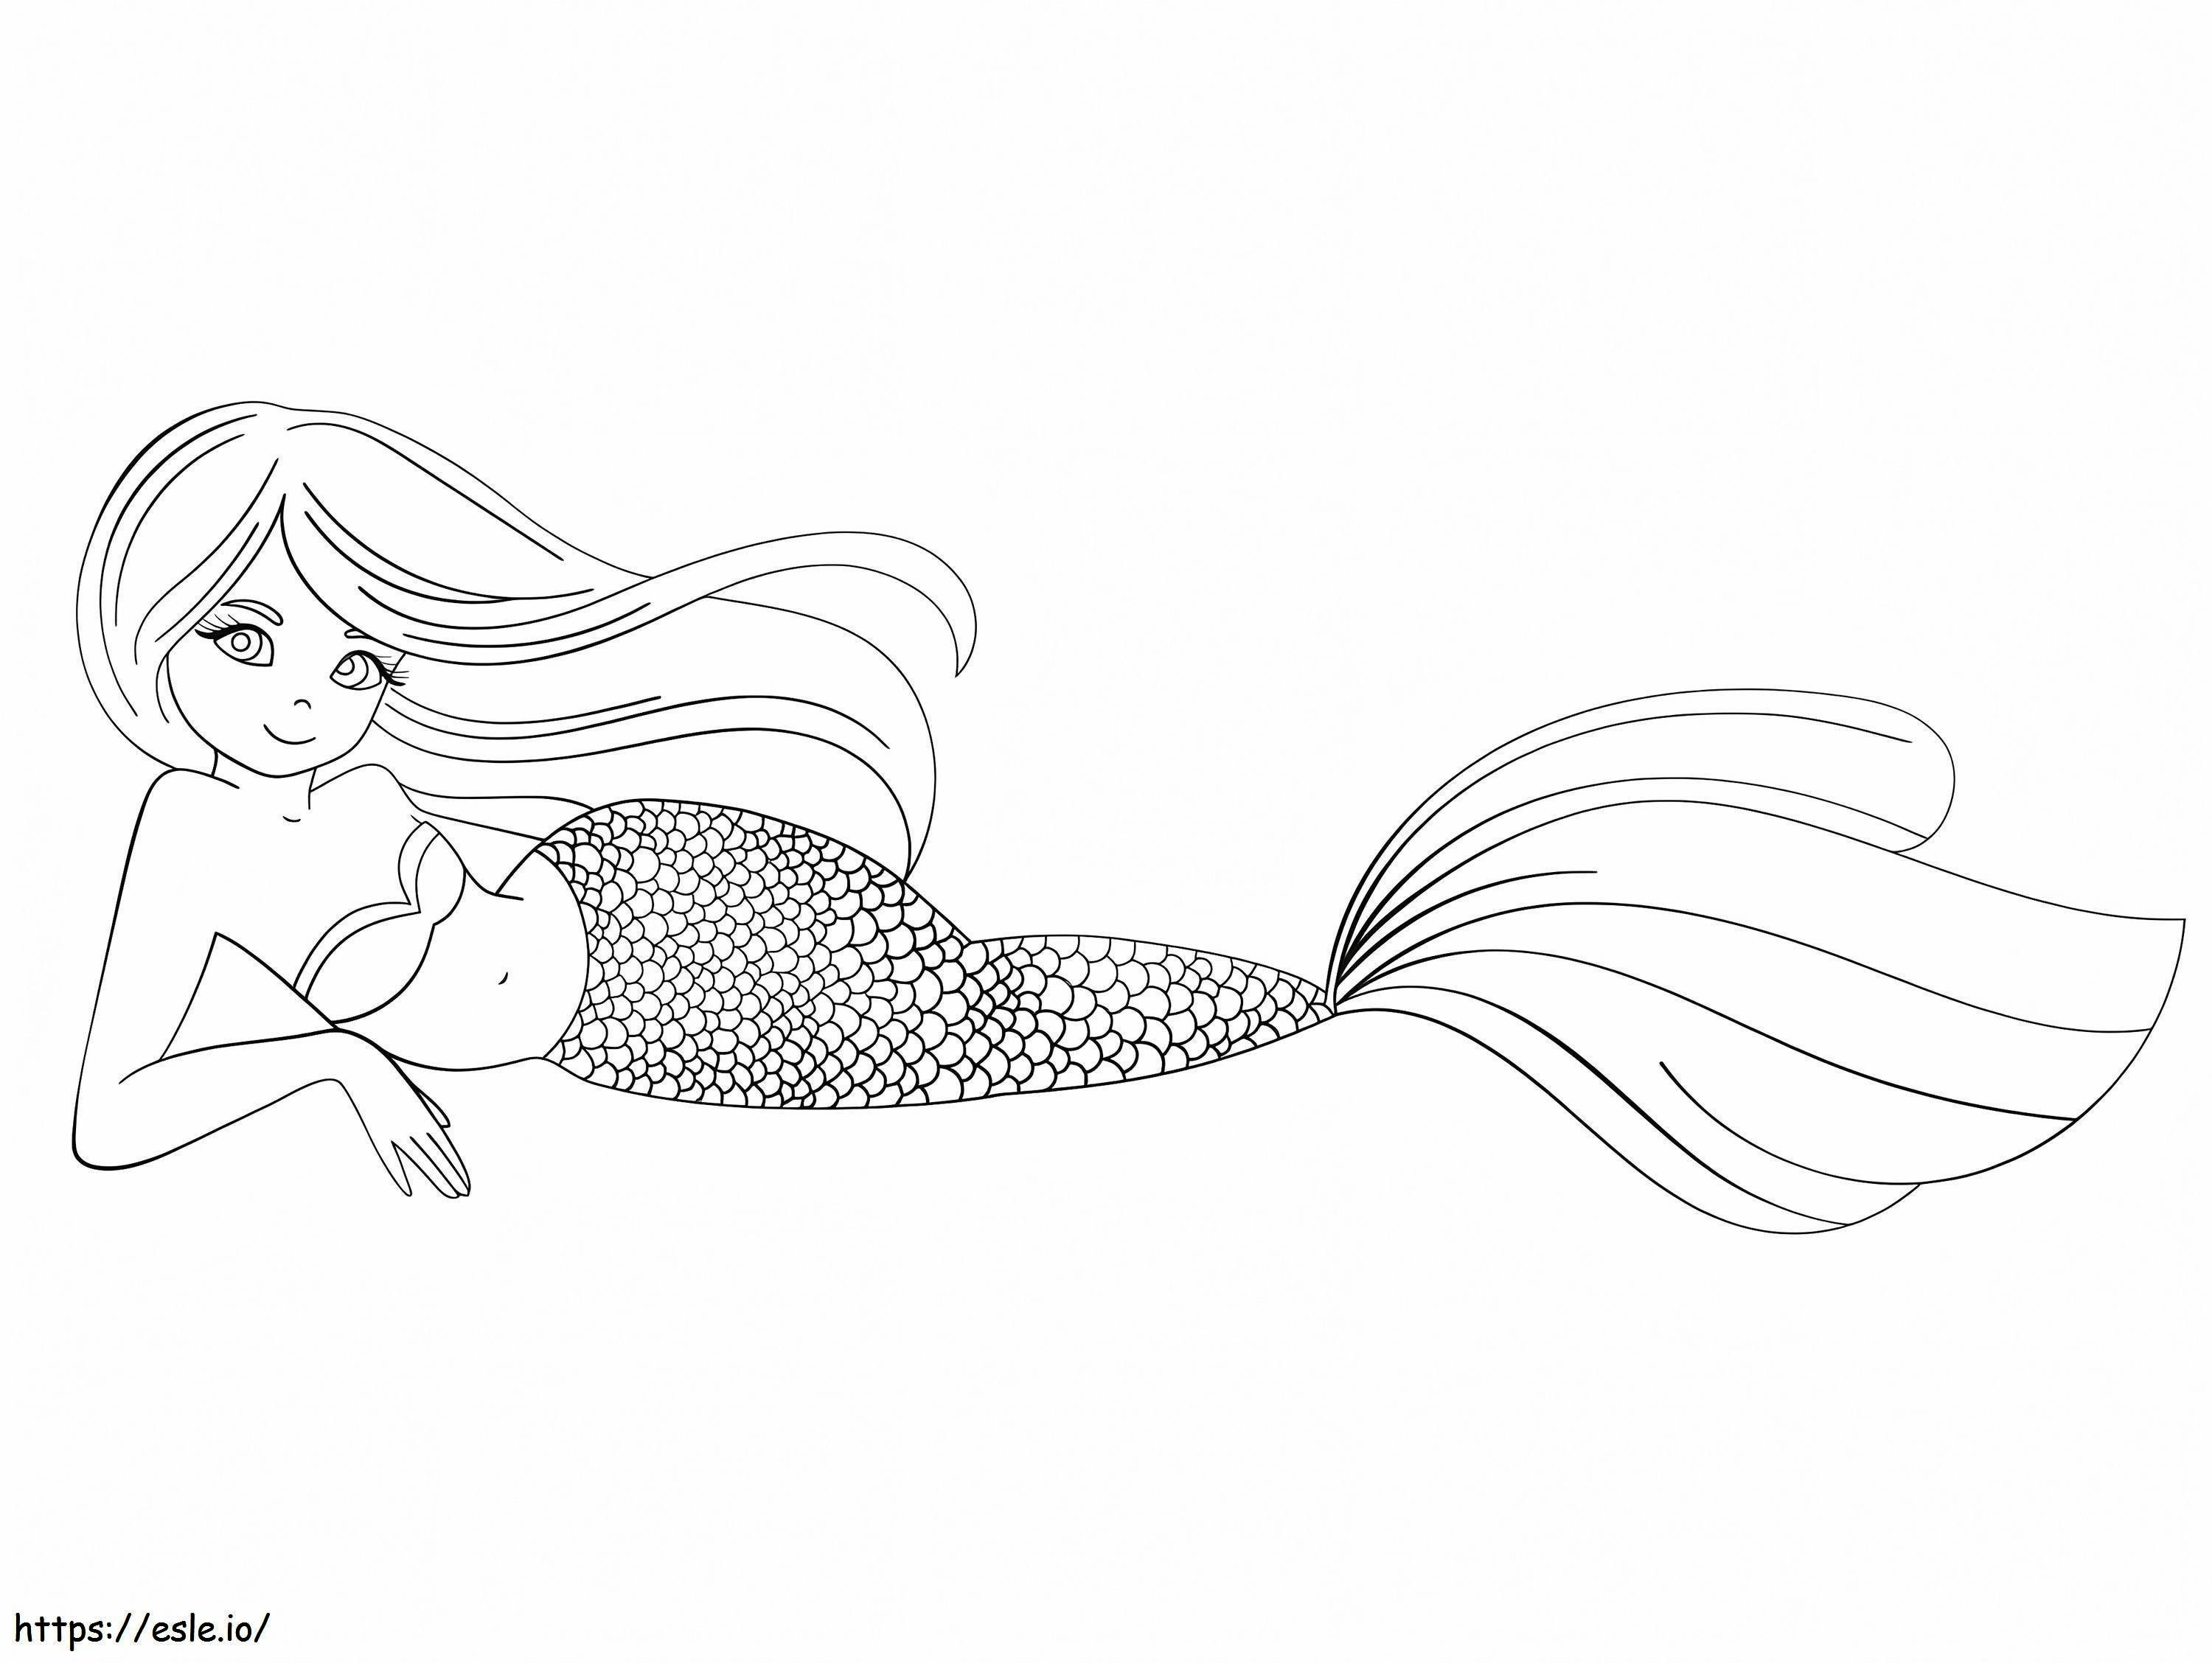 Mermaid 9 coloring page